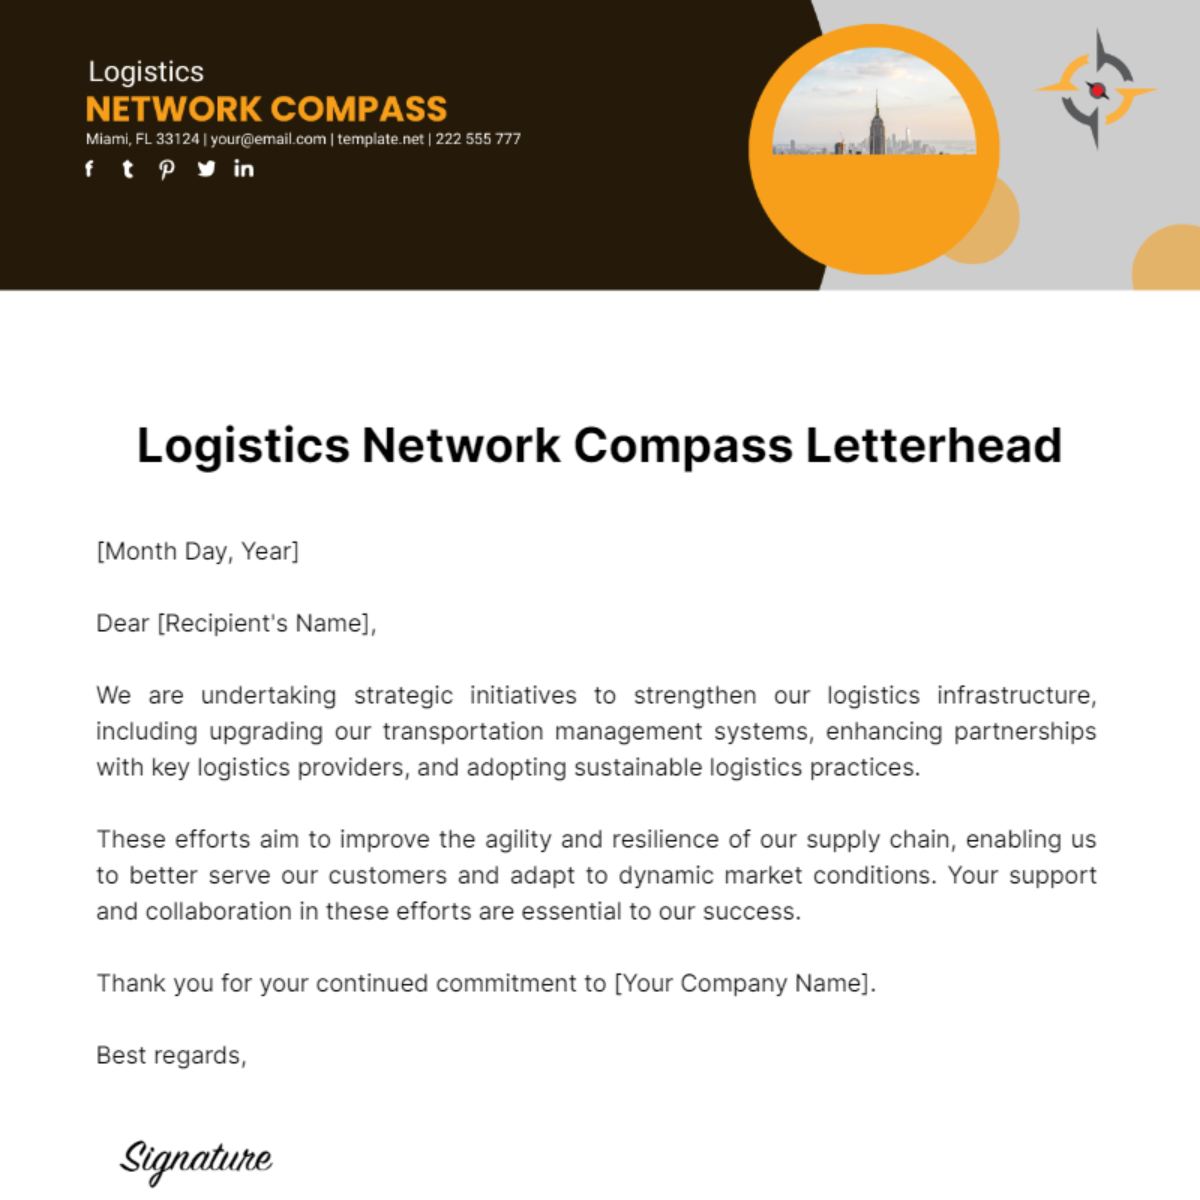 Logistics Network Compass Letterhead Template